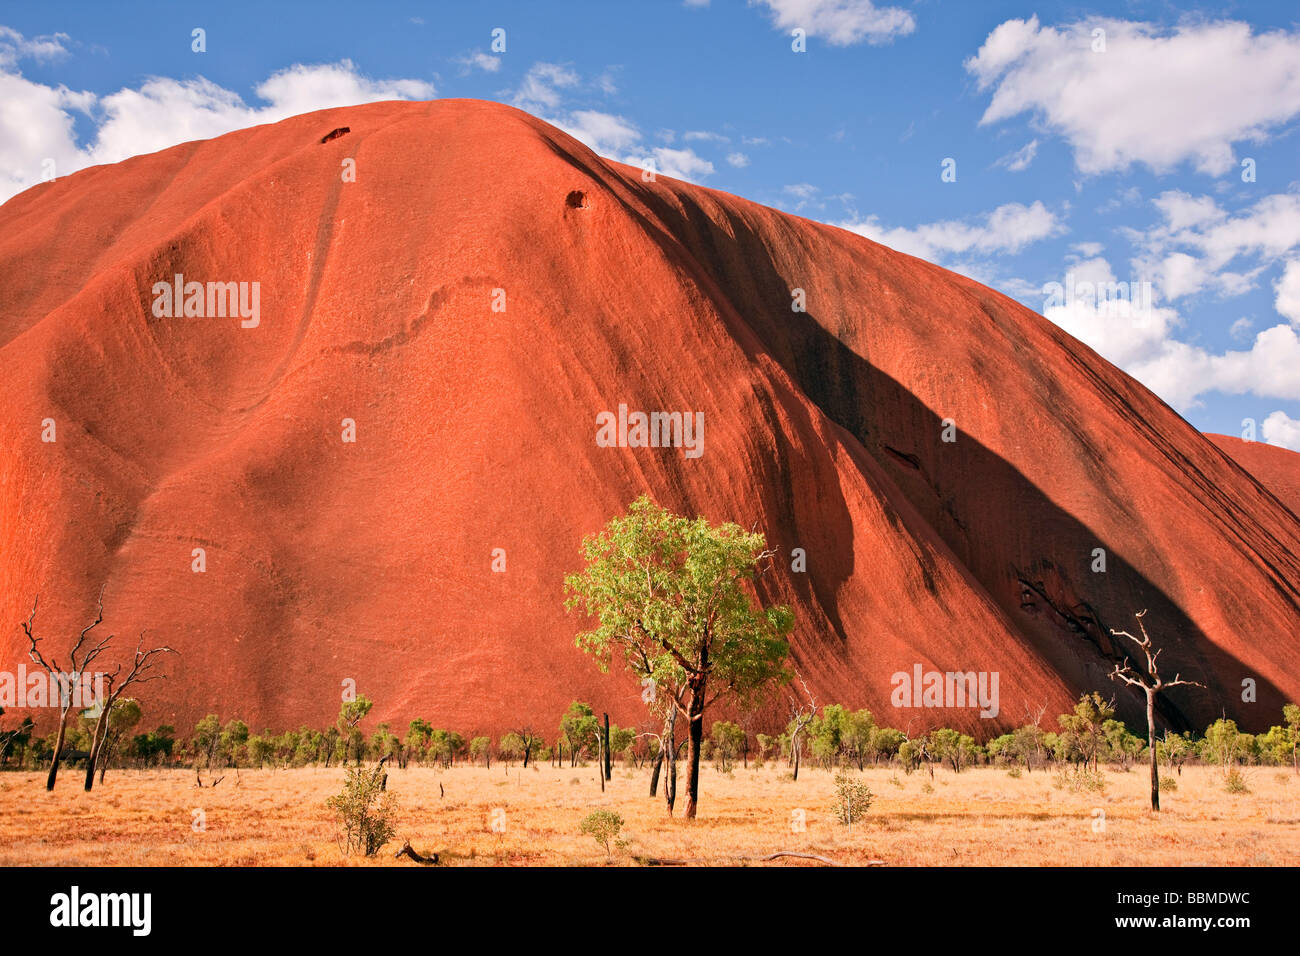 Australien, Northern Territory. Uluru oder Ayers Rock, ein riesiger Sandstein-Felsformation. Eines der bekanntesten natürlichen Symbole. Stockfoto